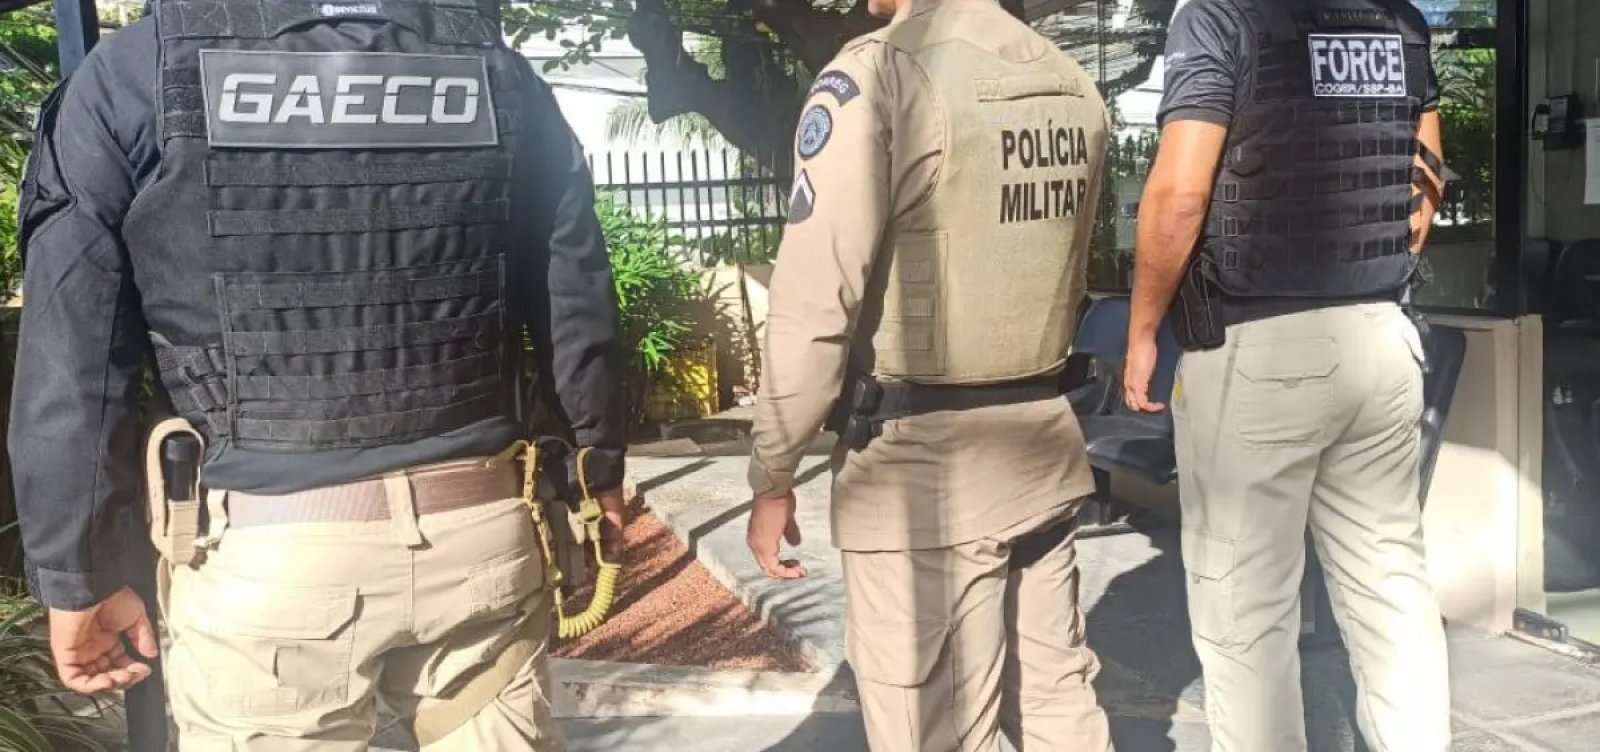 Policiais são investigados por vender fuzis em grupo de WhatsApp na Bahia